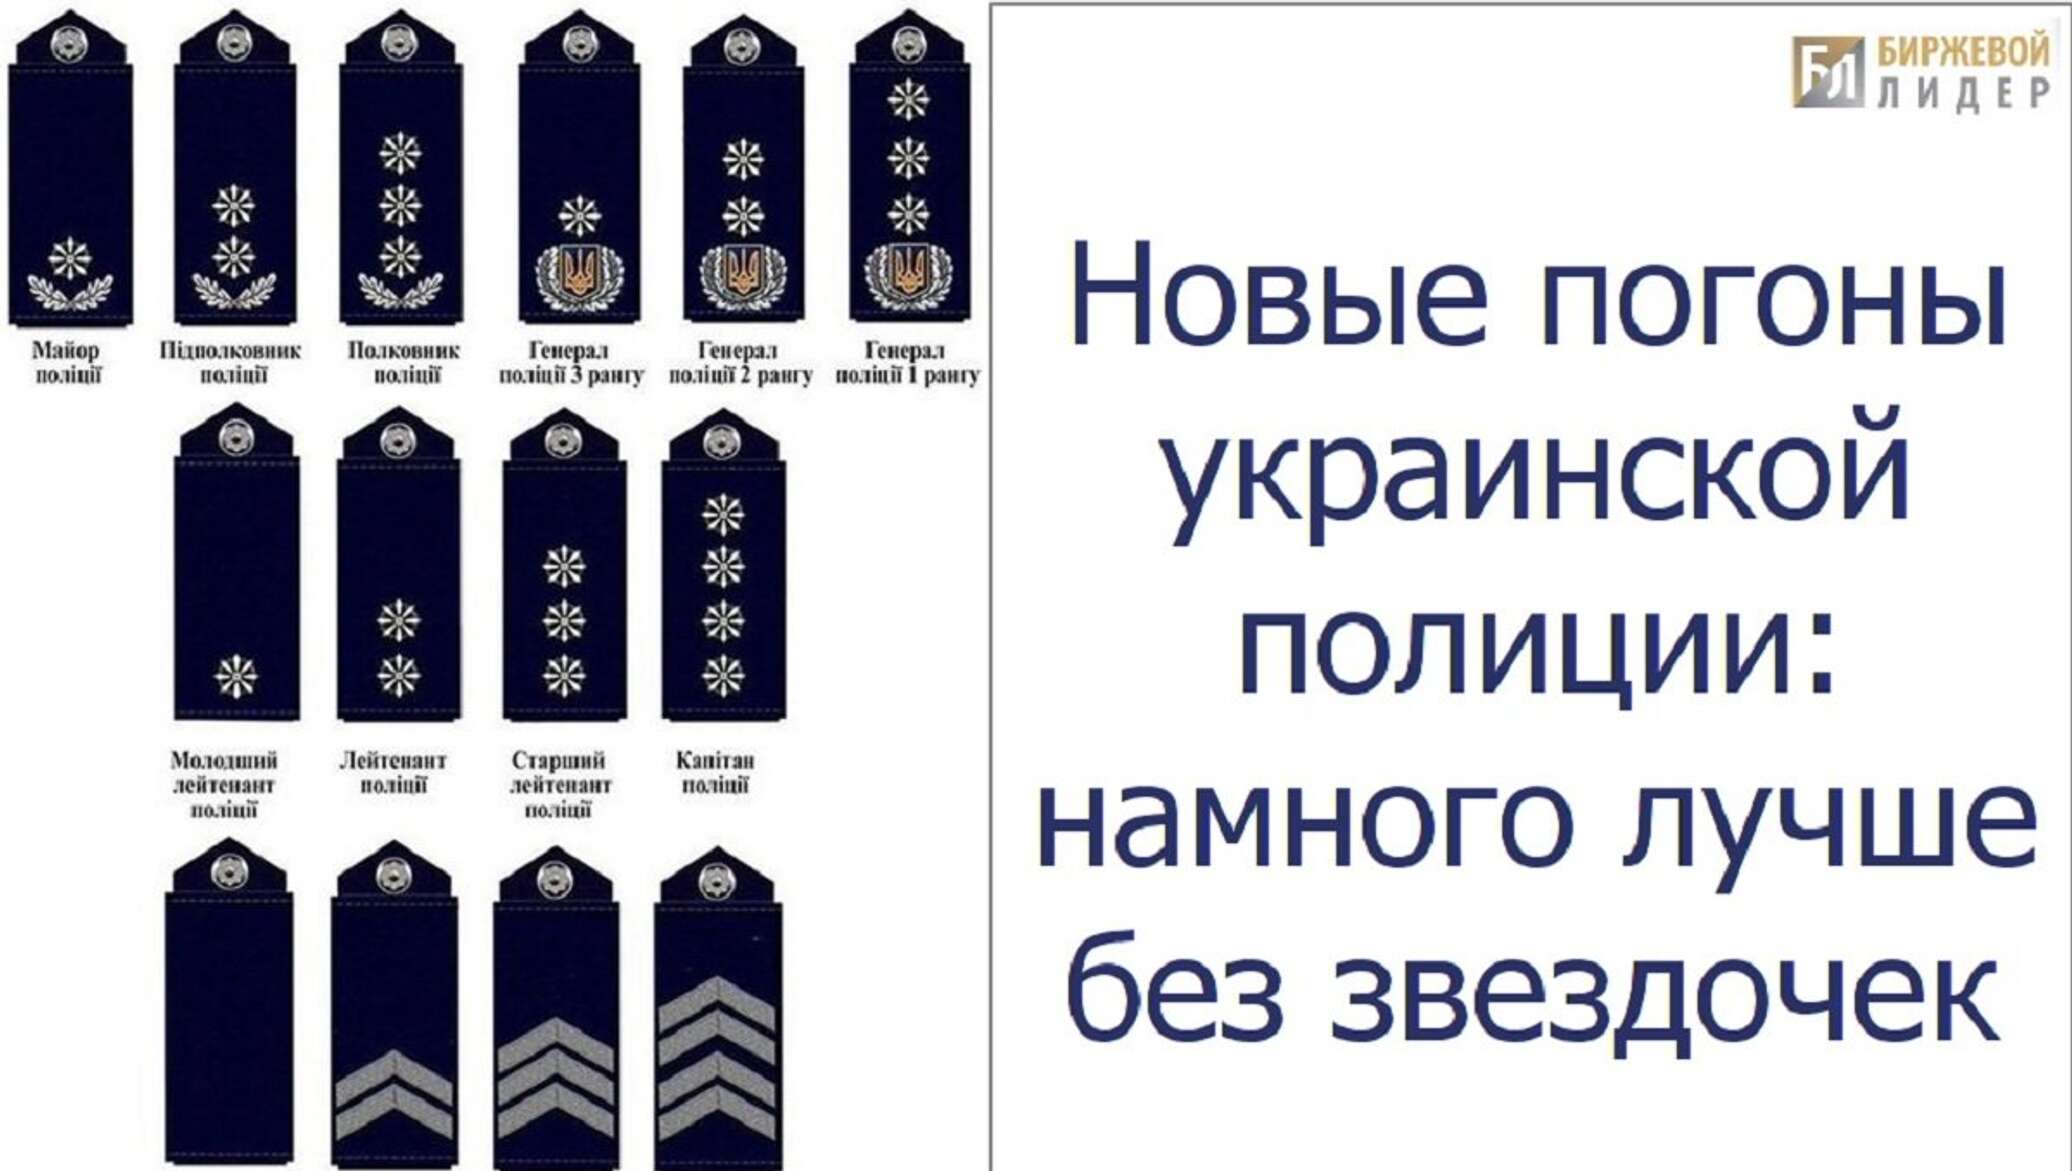 Звания в украинской полиции